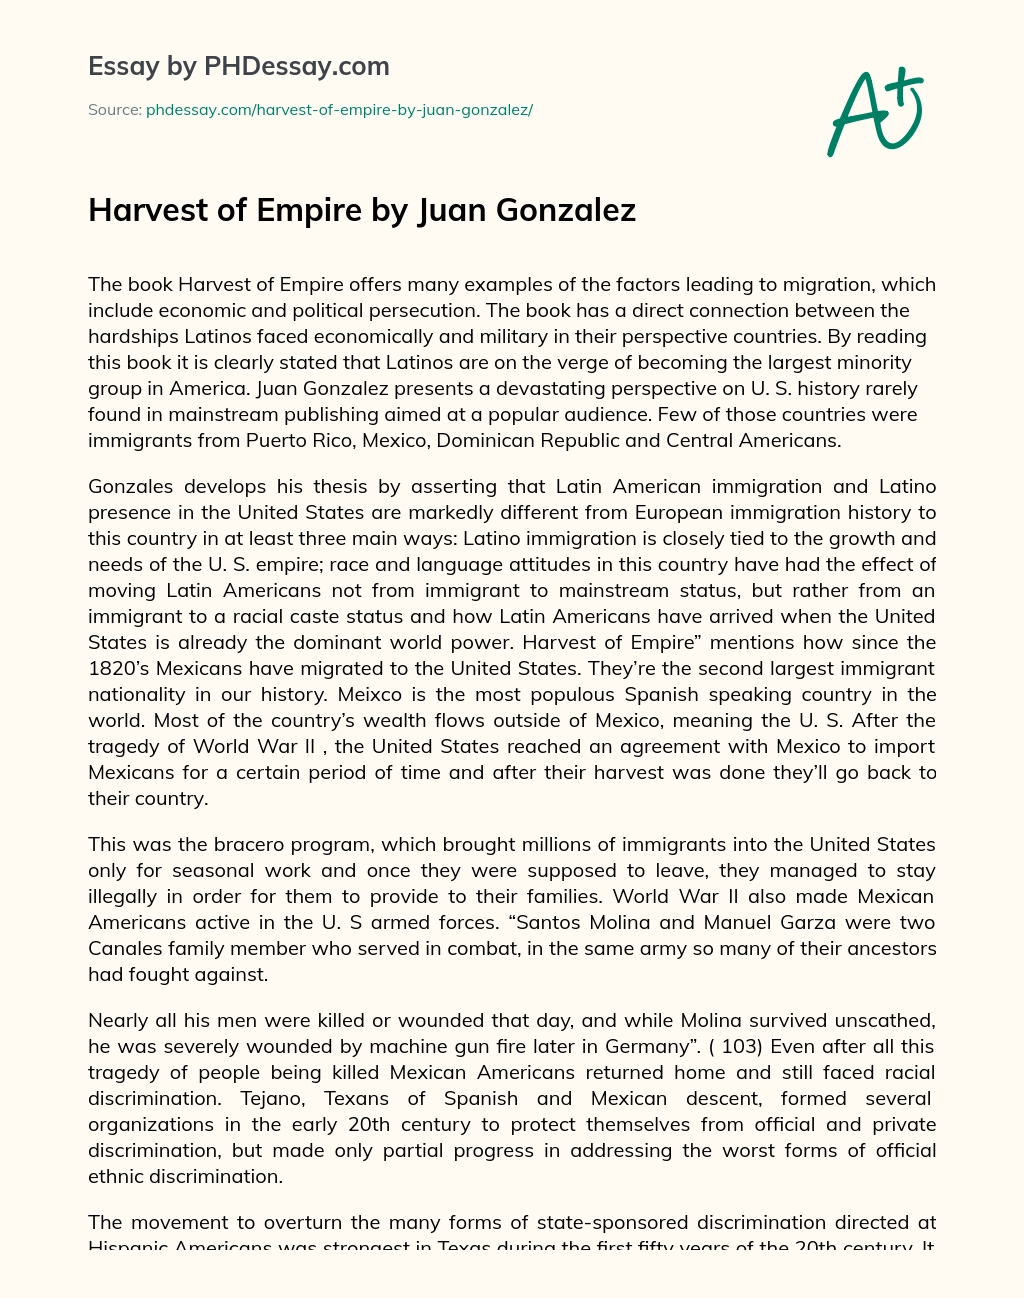 Harvest of Empire by Juan Gonzalez essay